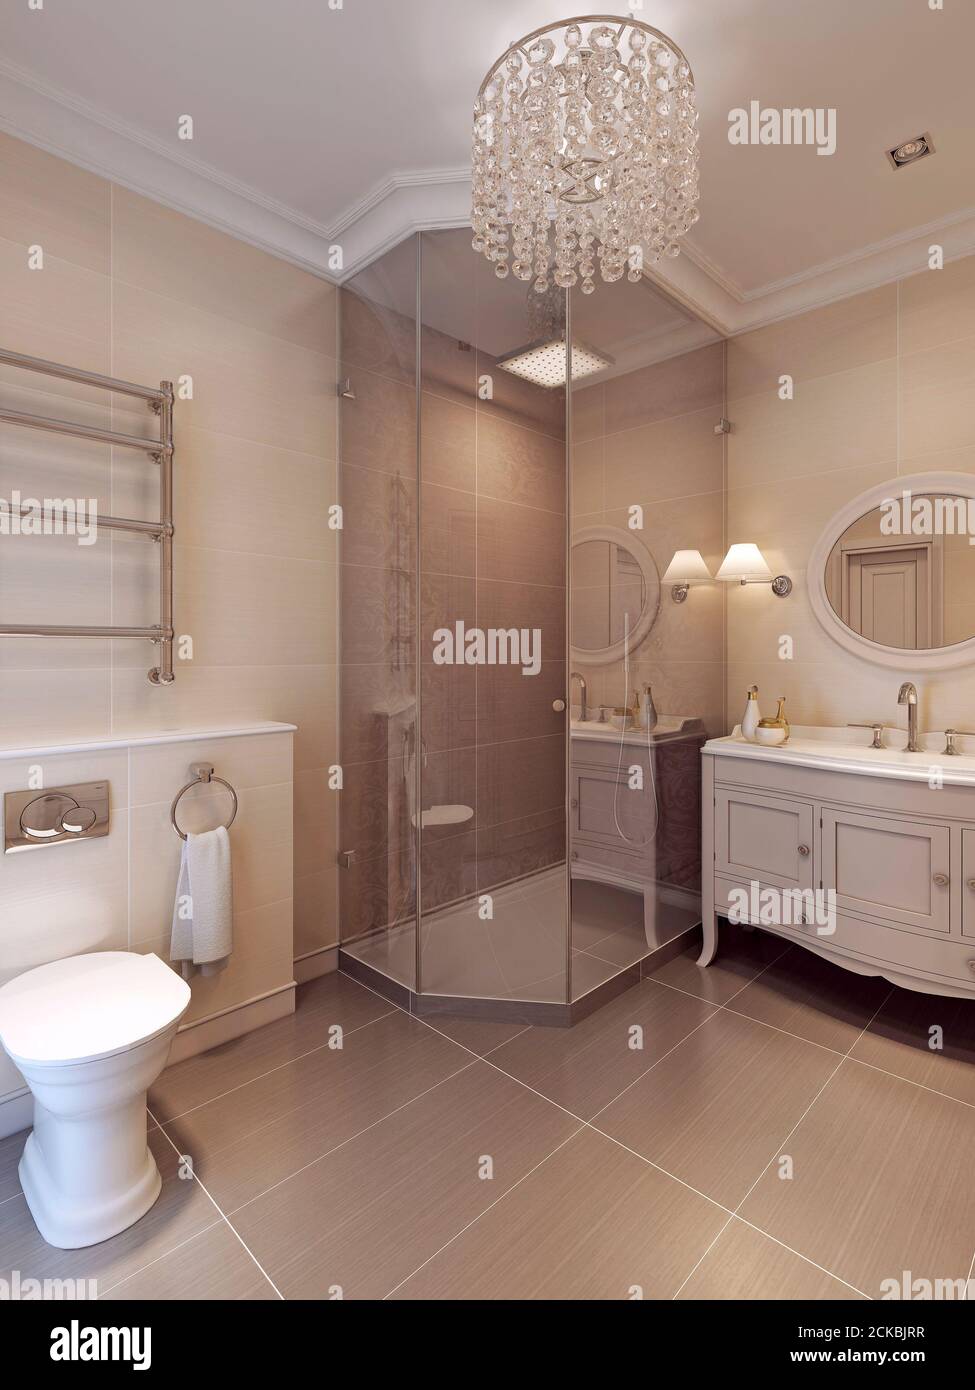 Ein Badezimmer in modernem Stil. Fliesenmuster in braun und beige Farben.  3D-Rendering Stockfotografie - Alamy